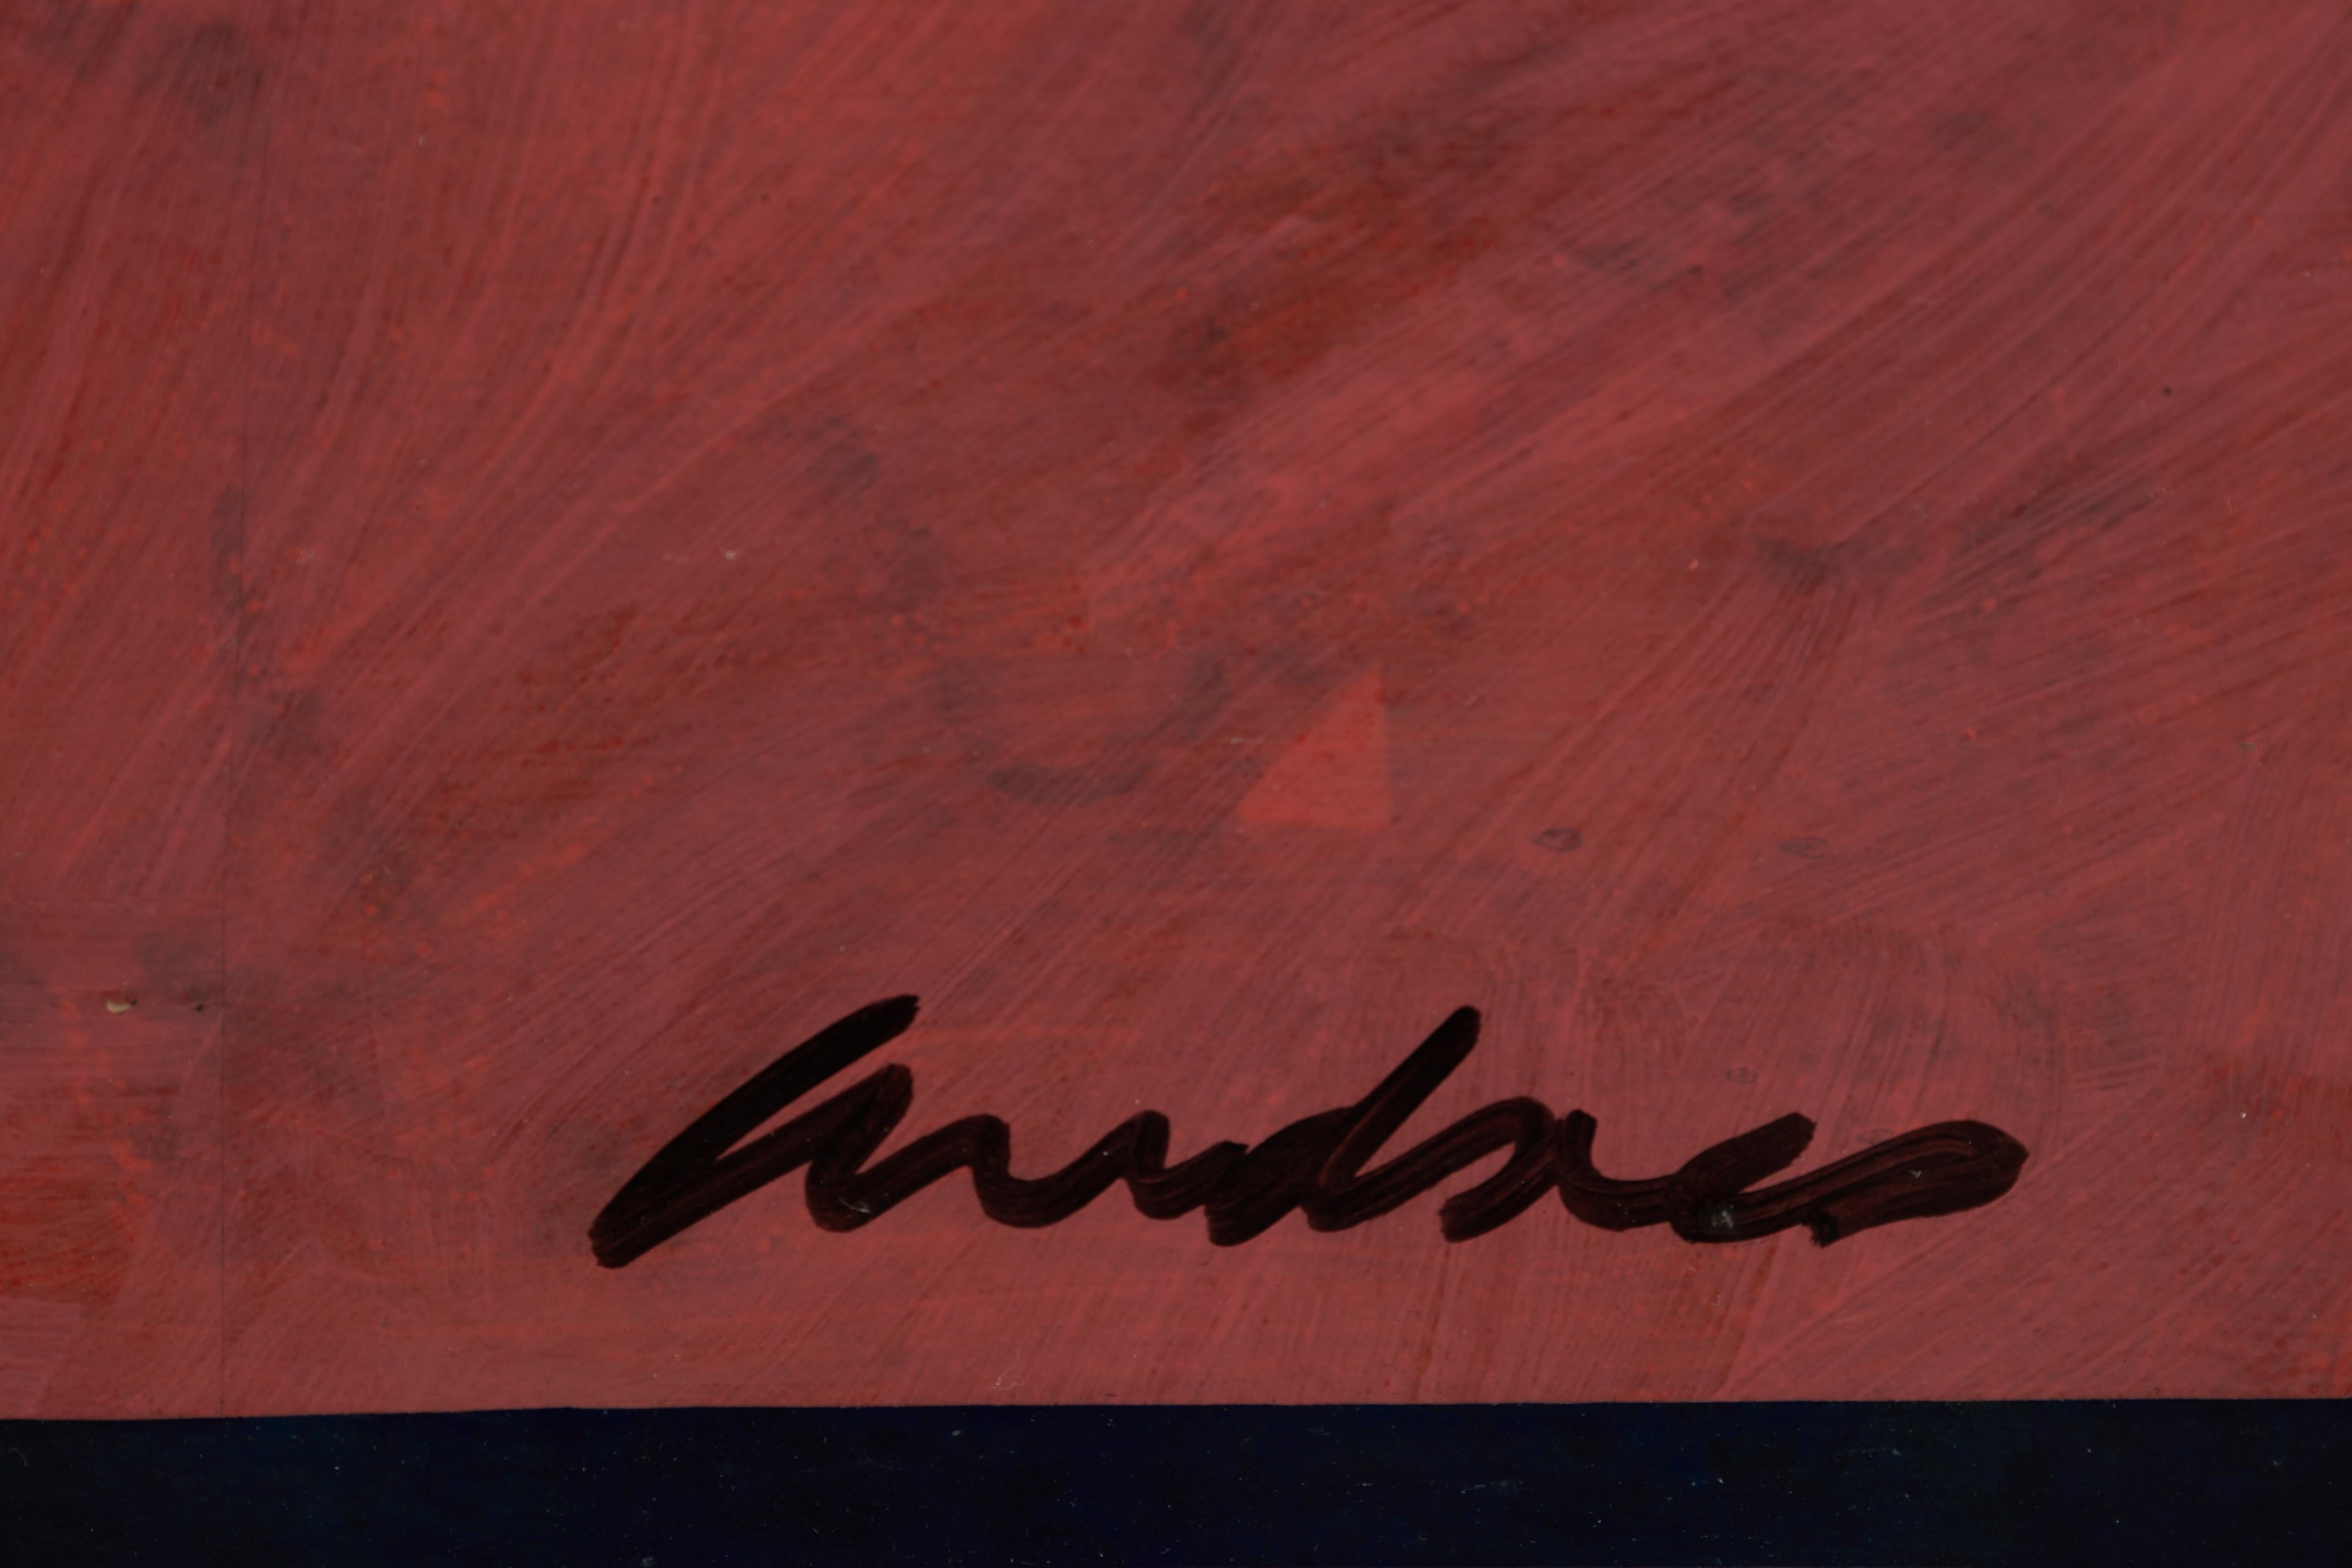 Richard Andre
Amerikaner, 1927-2013
Sommeridylle, ca. 1985
Acryl und Tinte auf Papier auf Leinwand aufgezogen
signiert unten rechts, verso signiert und betitelt
44,75 x 62,75 Zoll

Richard Andres wurde 1927 in Buffalo, New York, geboren. Als